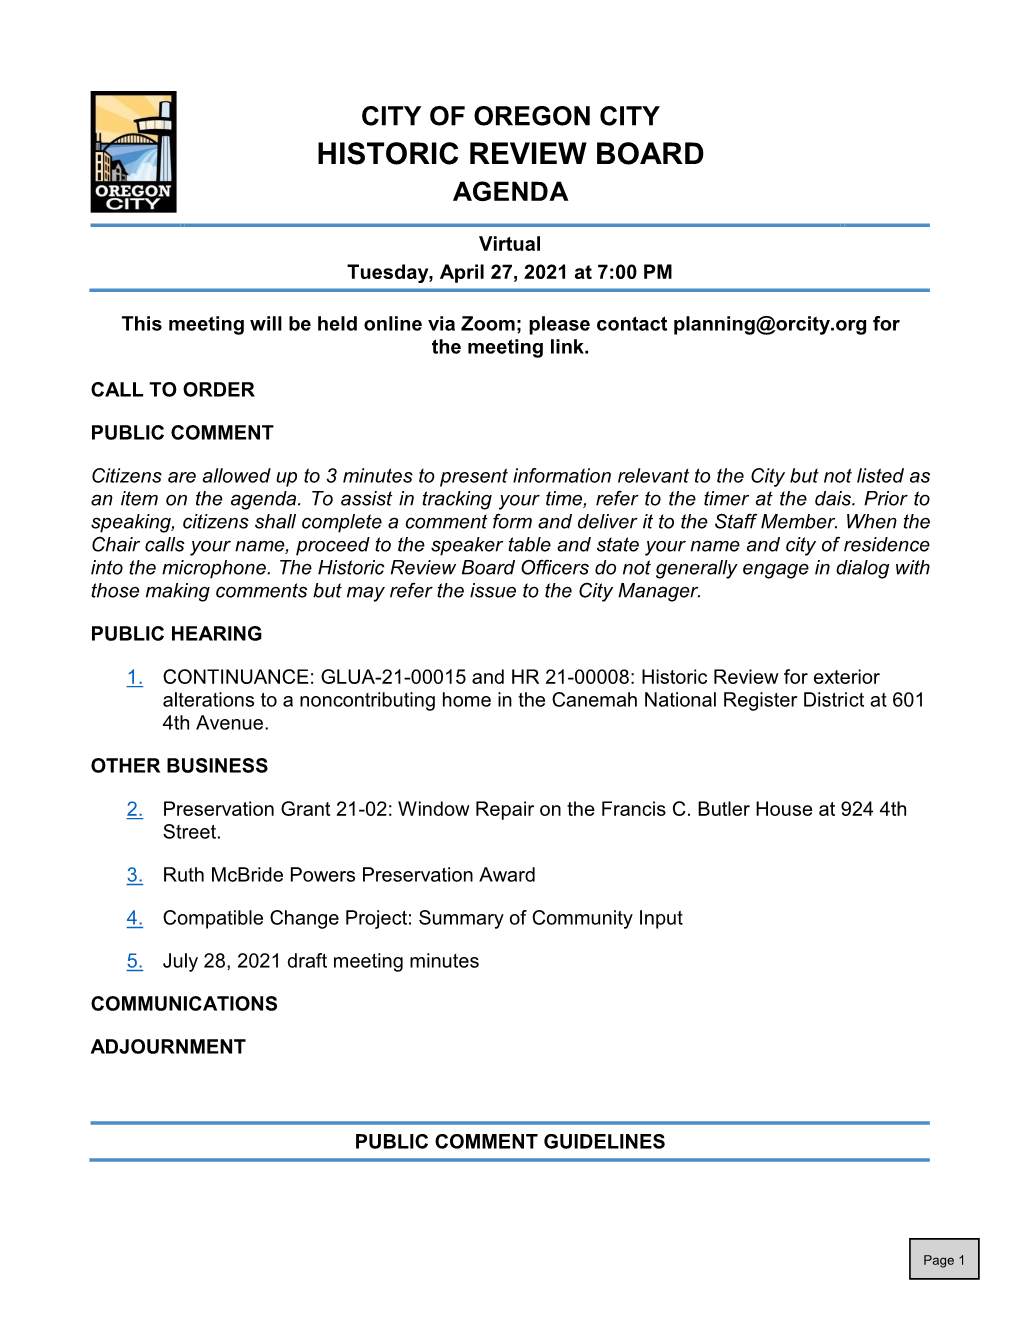 Historic Review Board Agenda